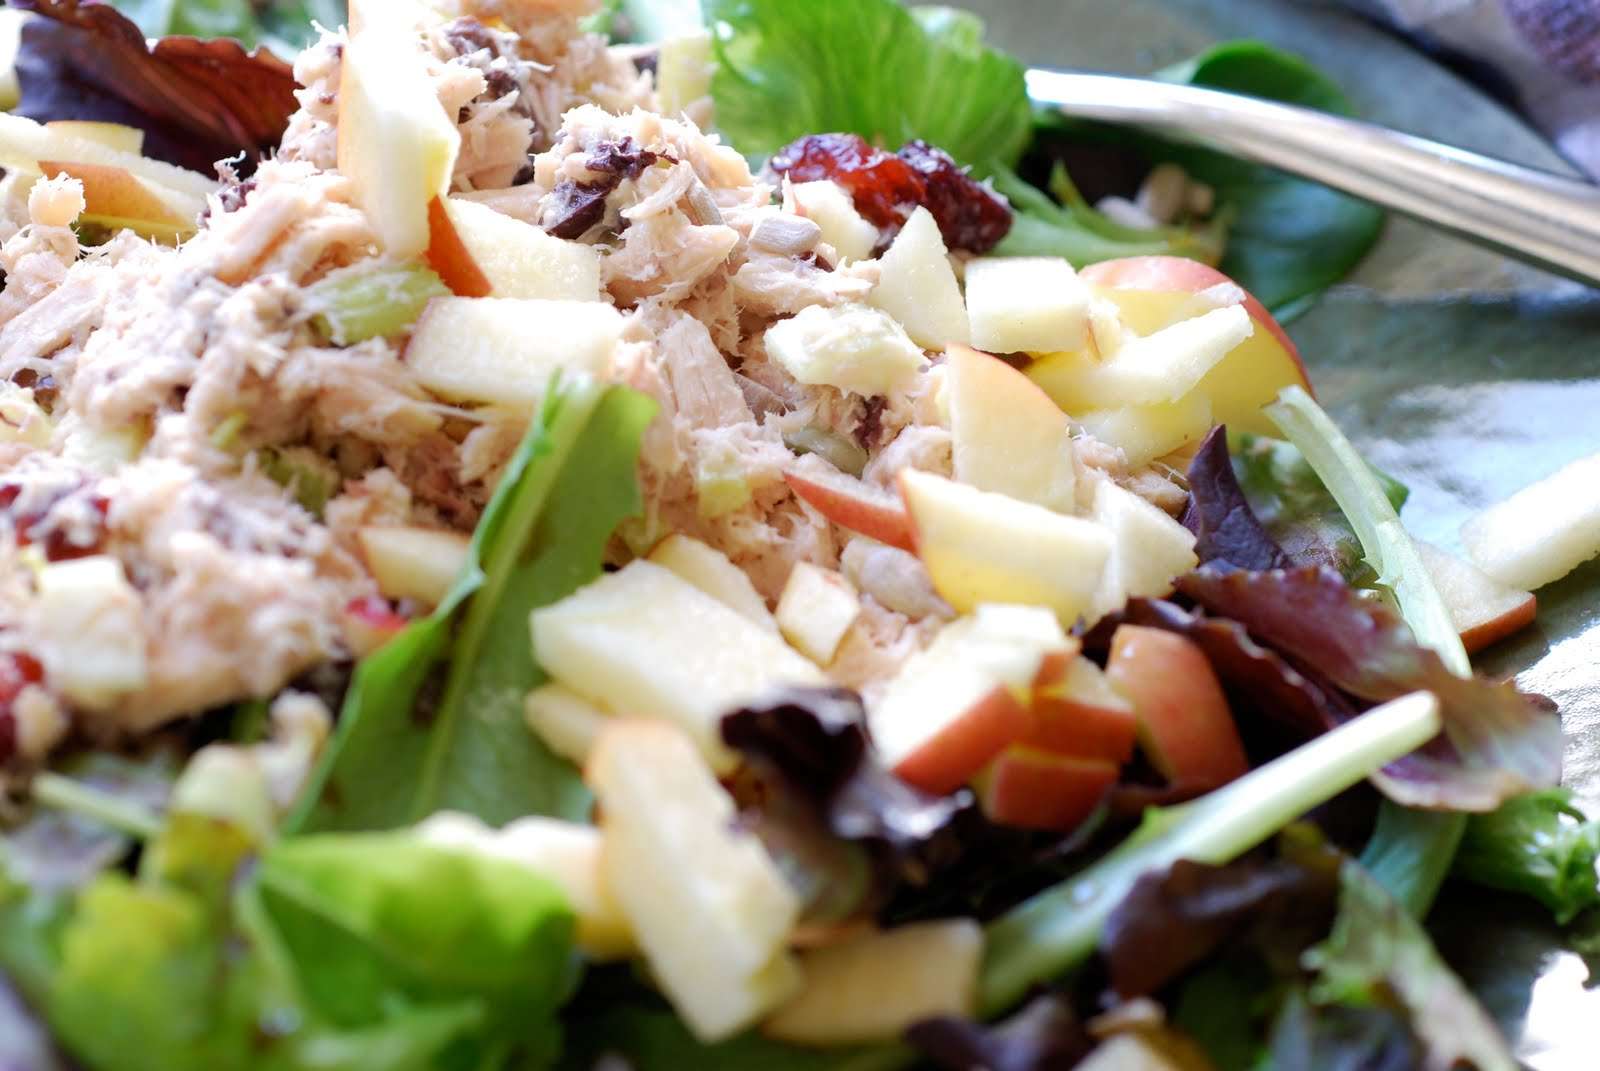 Recipes: Best Tuna Fish Salad